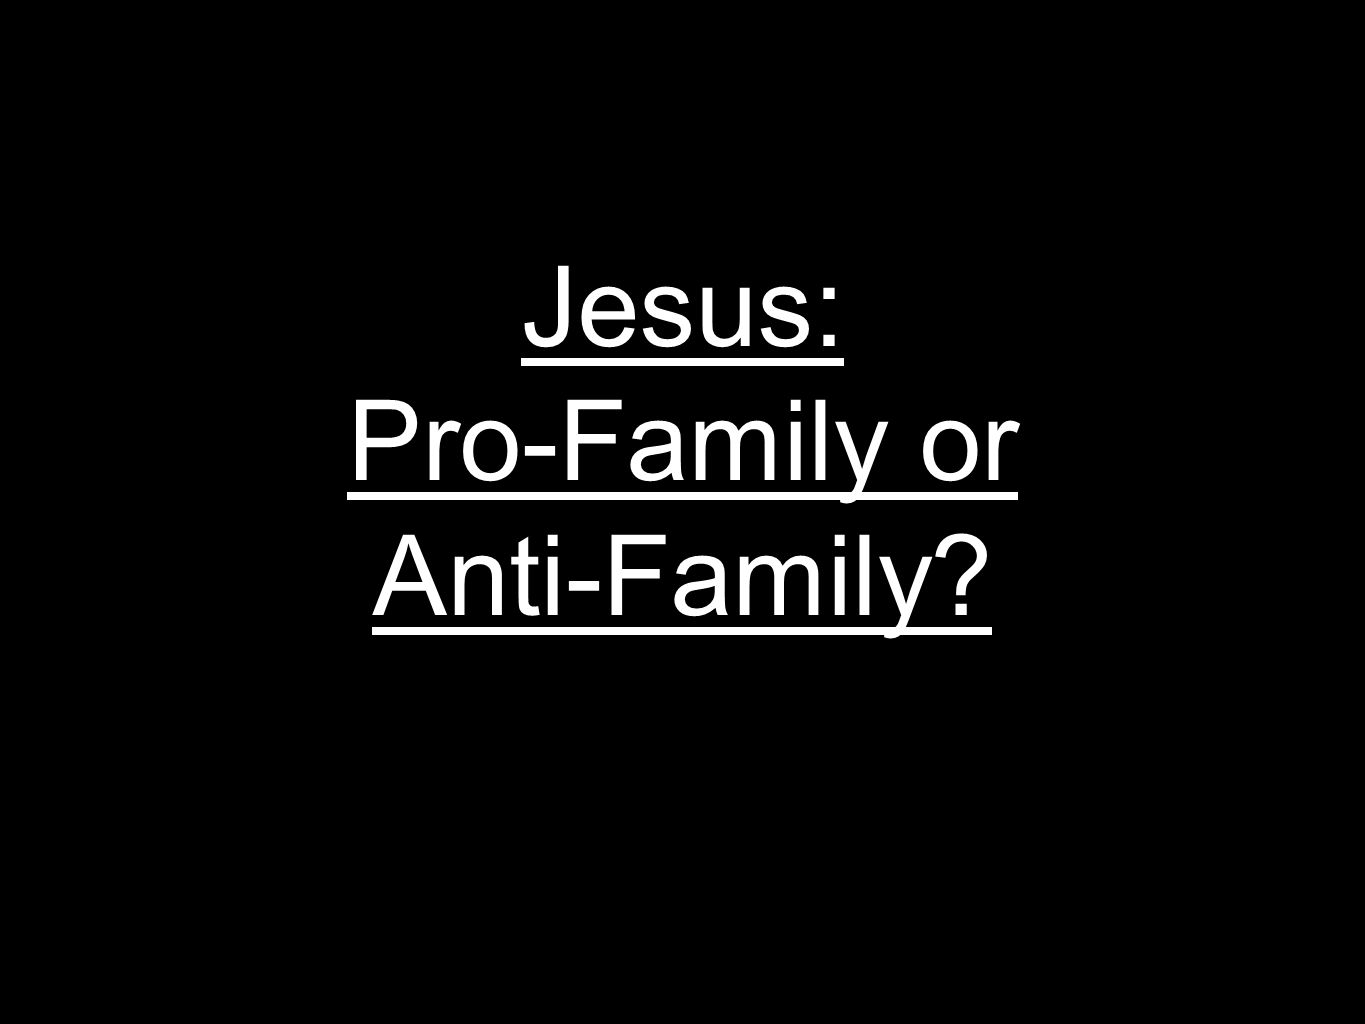 Jesus: Pro-Family or Anti-Family